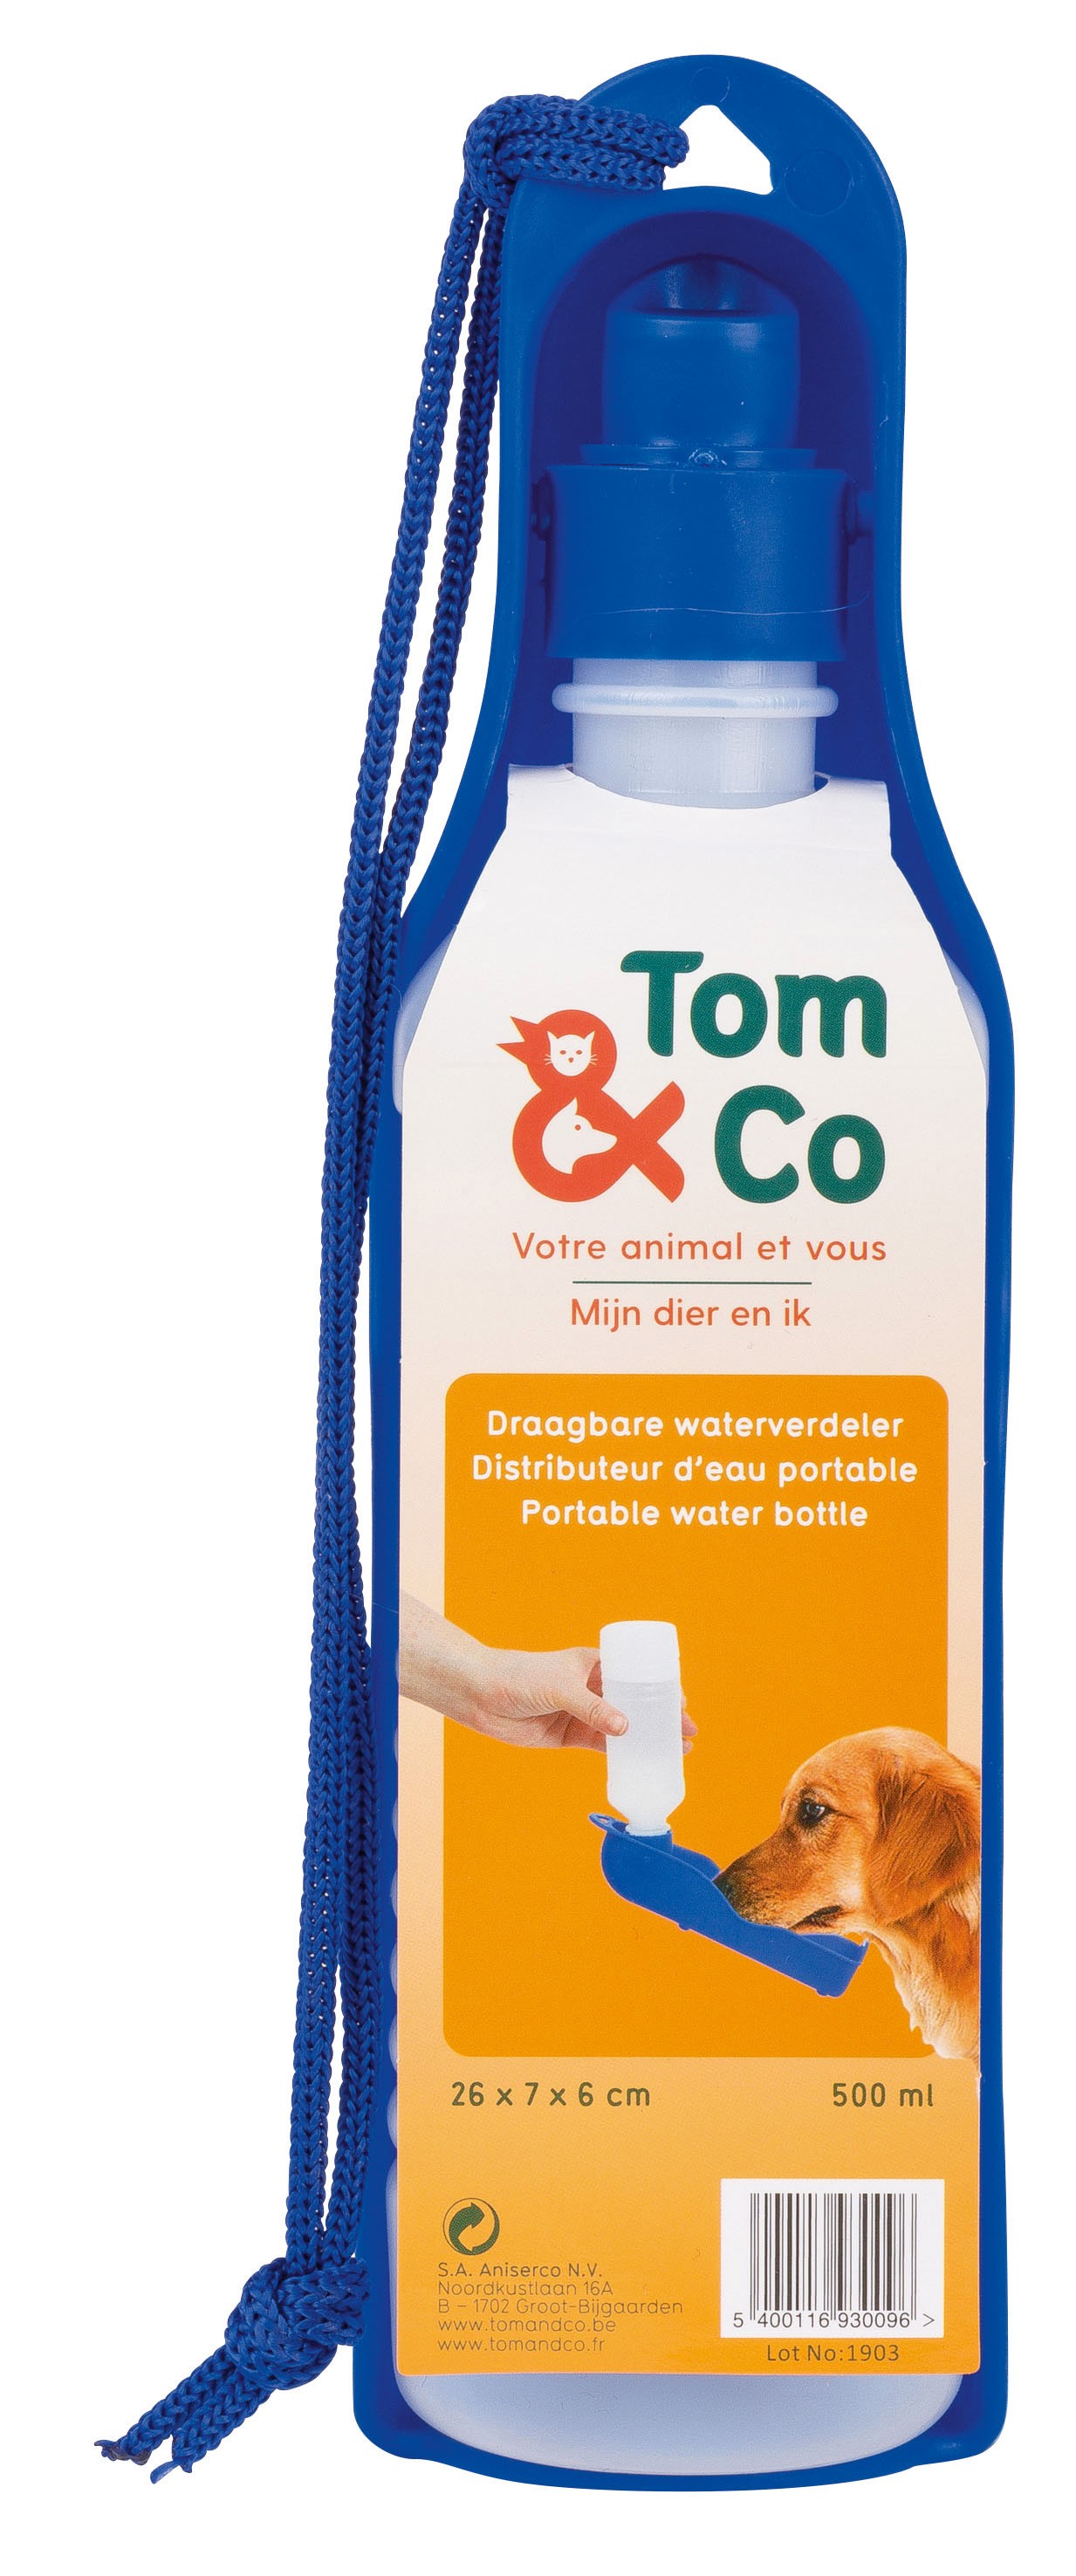 Tom&Co Distributeur D'Eau Portable 500Ml